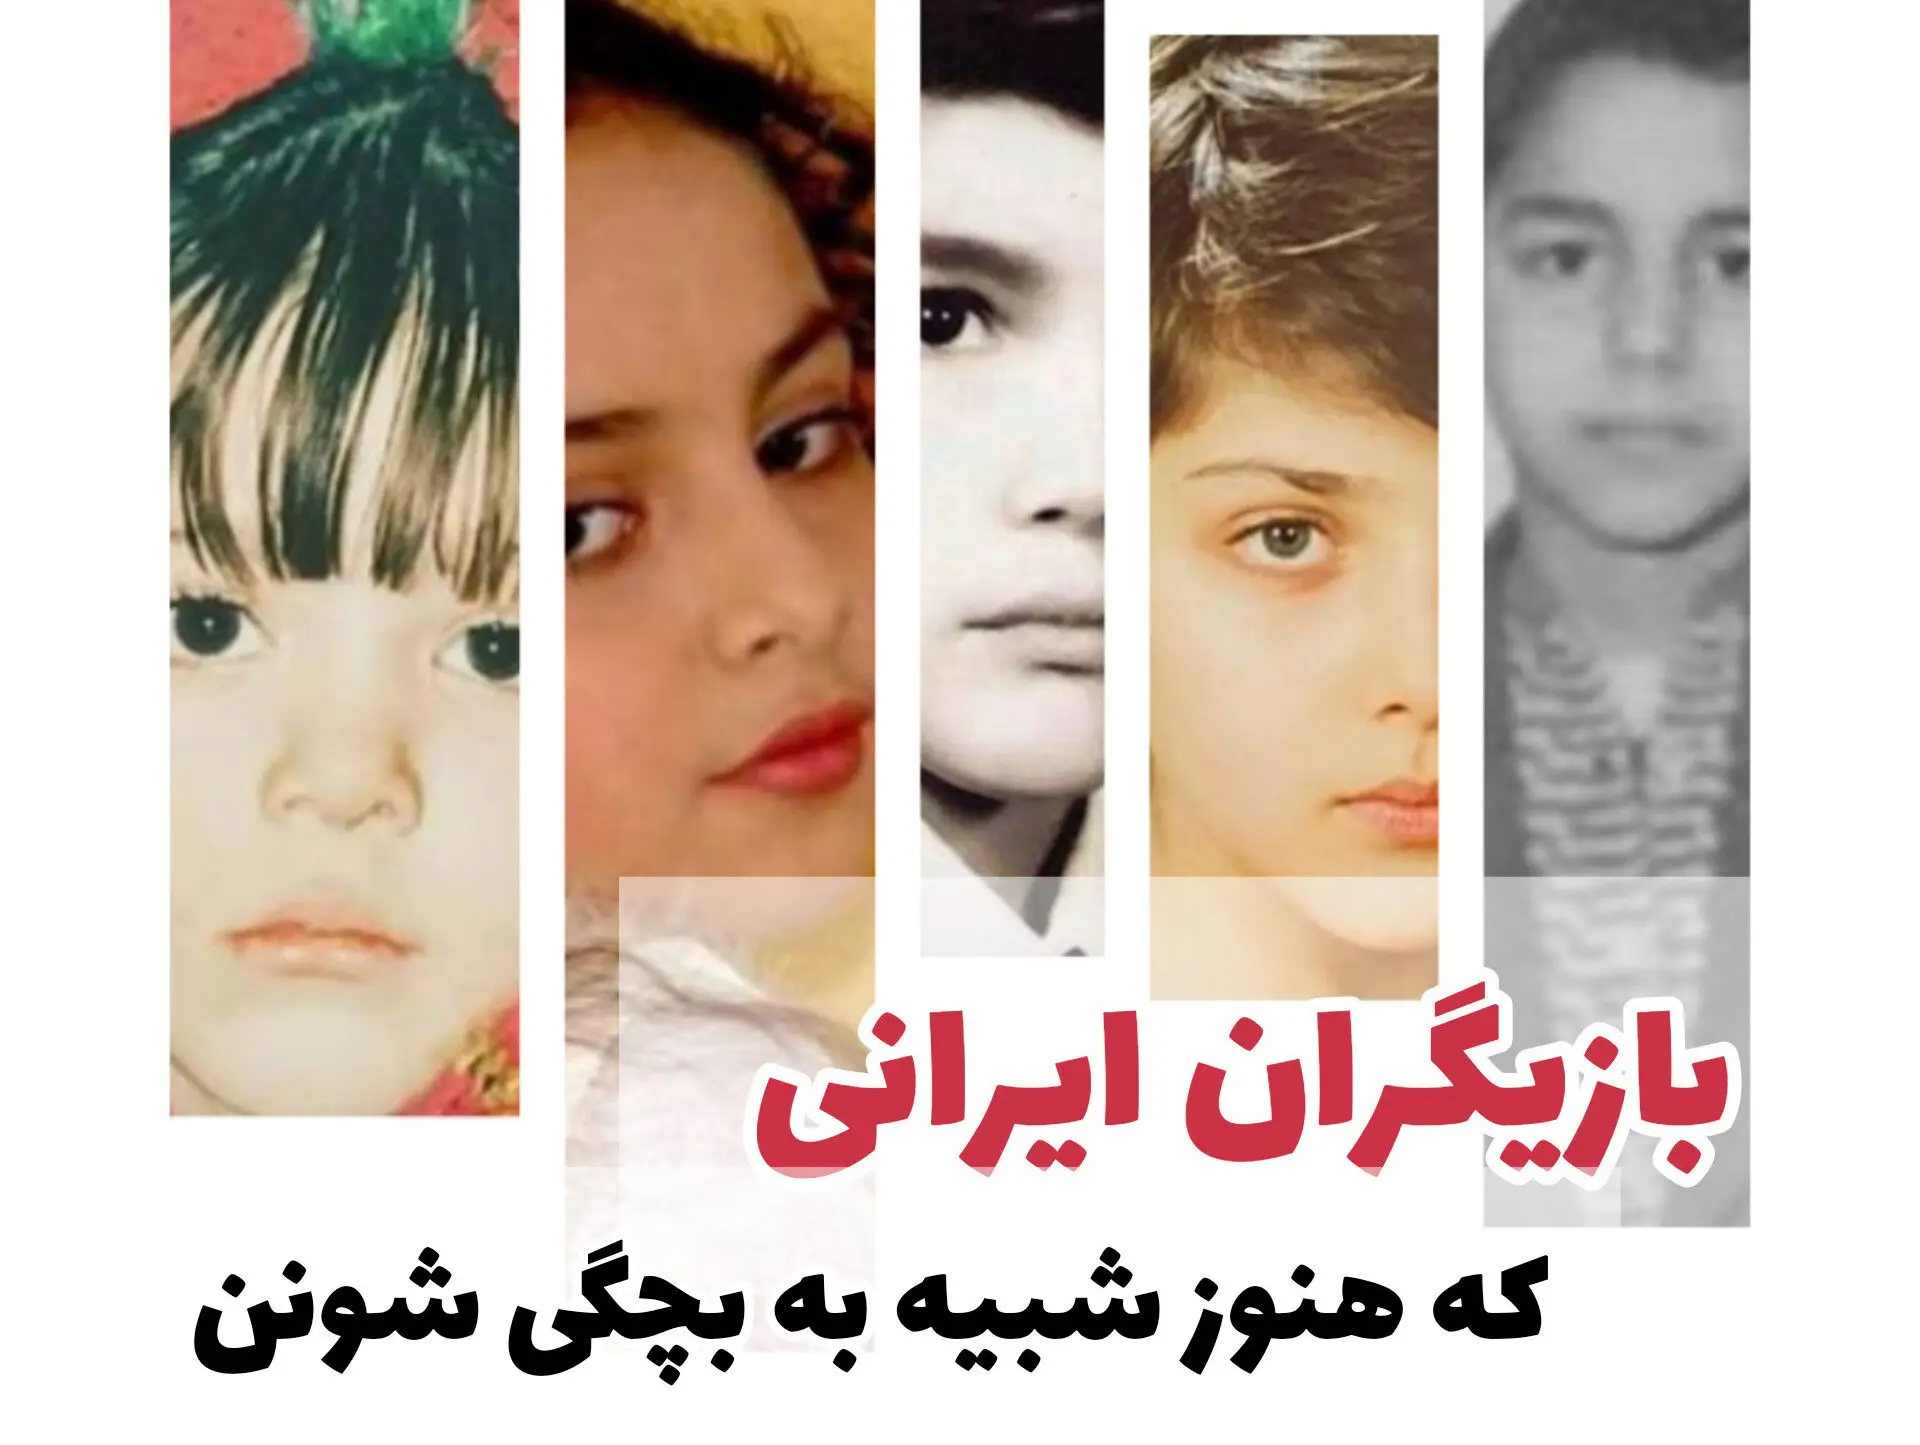 این بازیگران ایرانی بیشترین شباهت رو به بچگیشون دارن! + تصویر